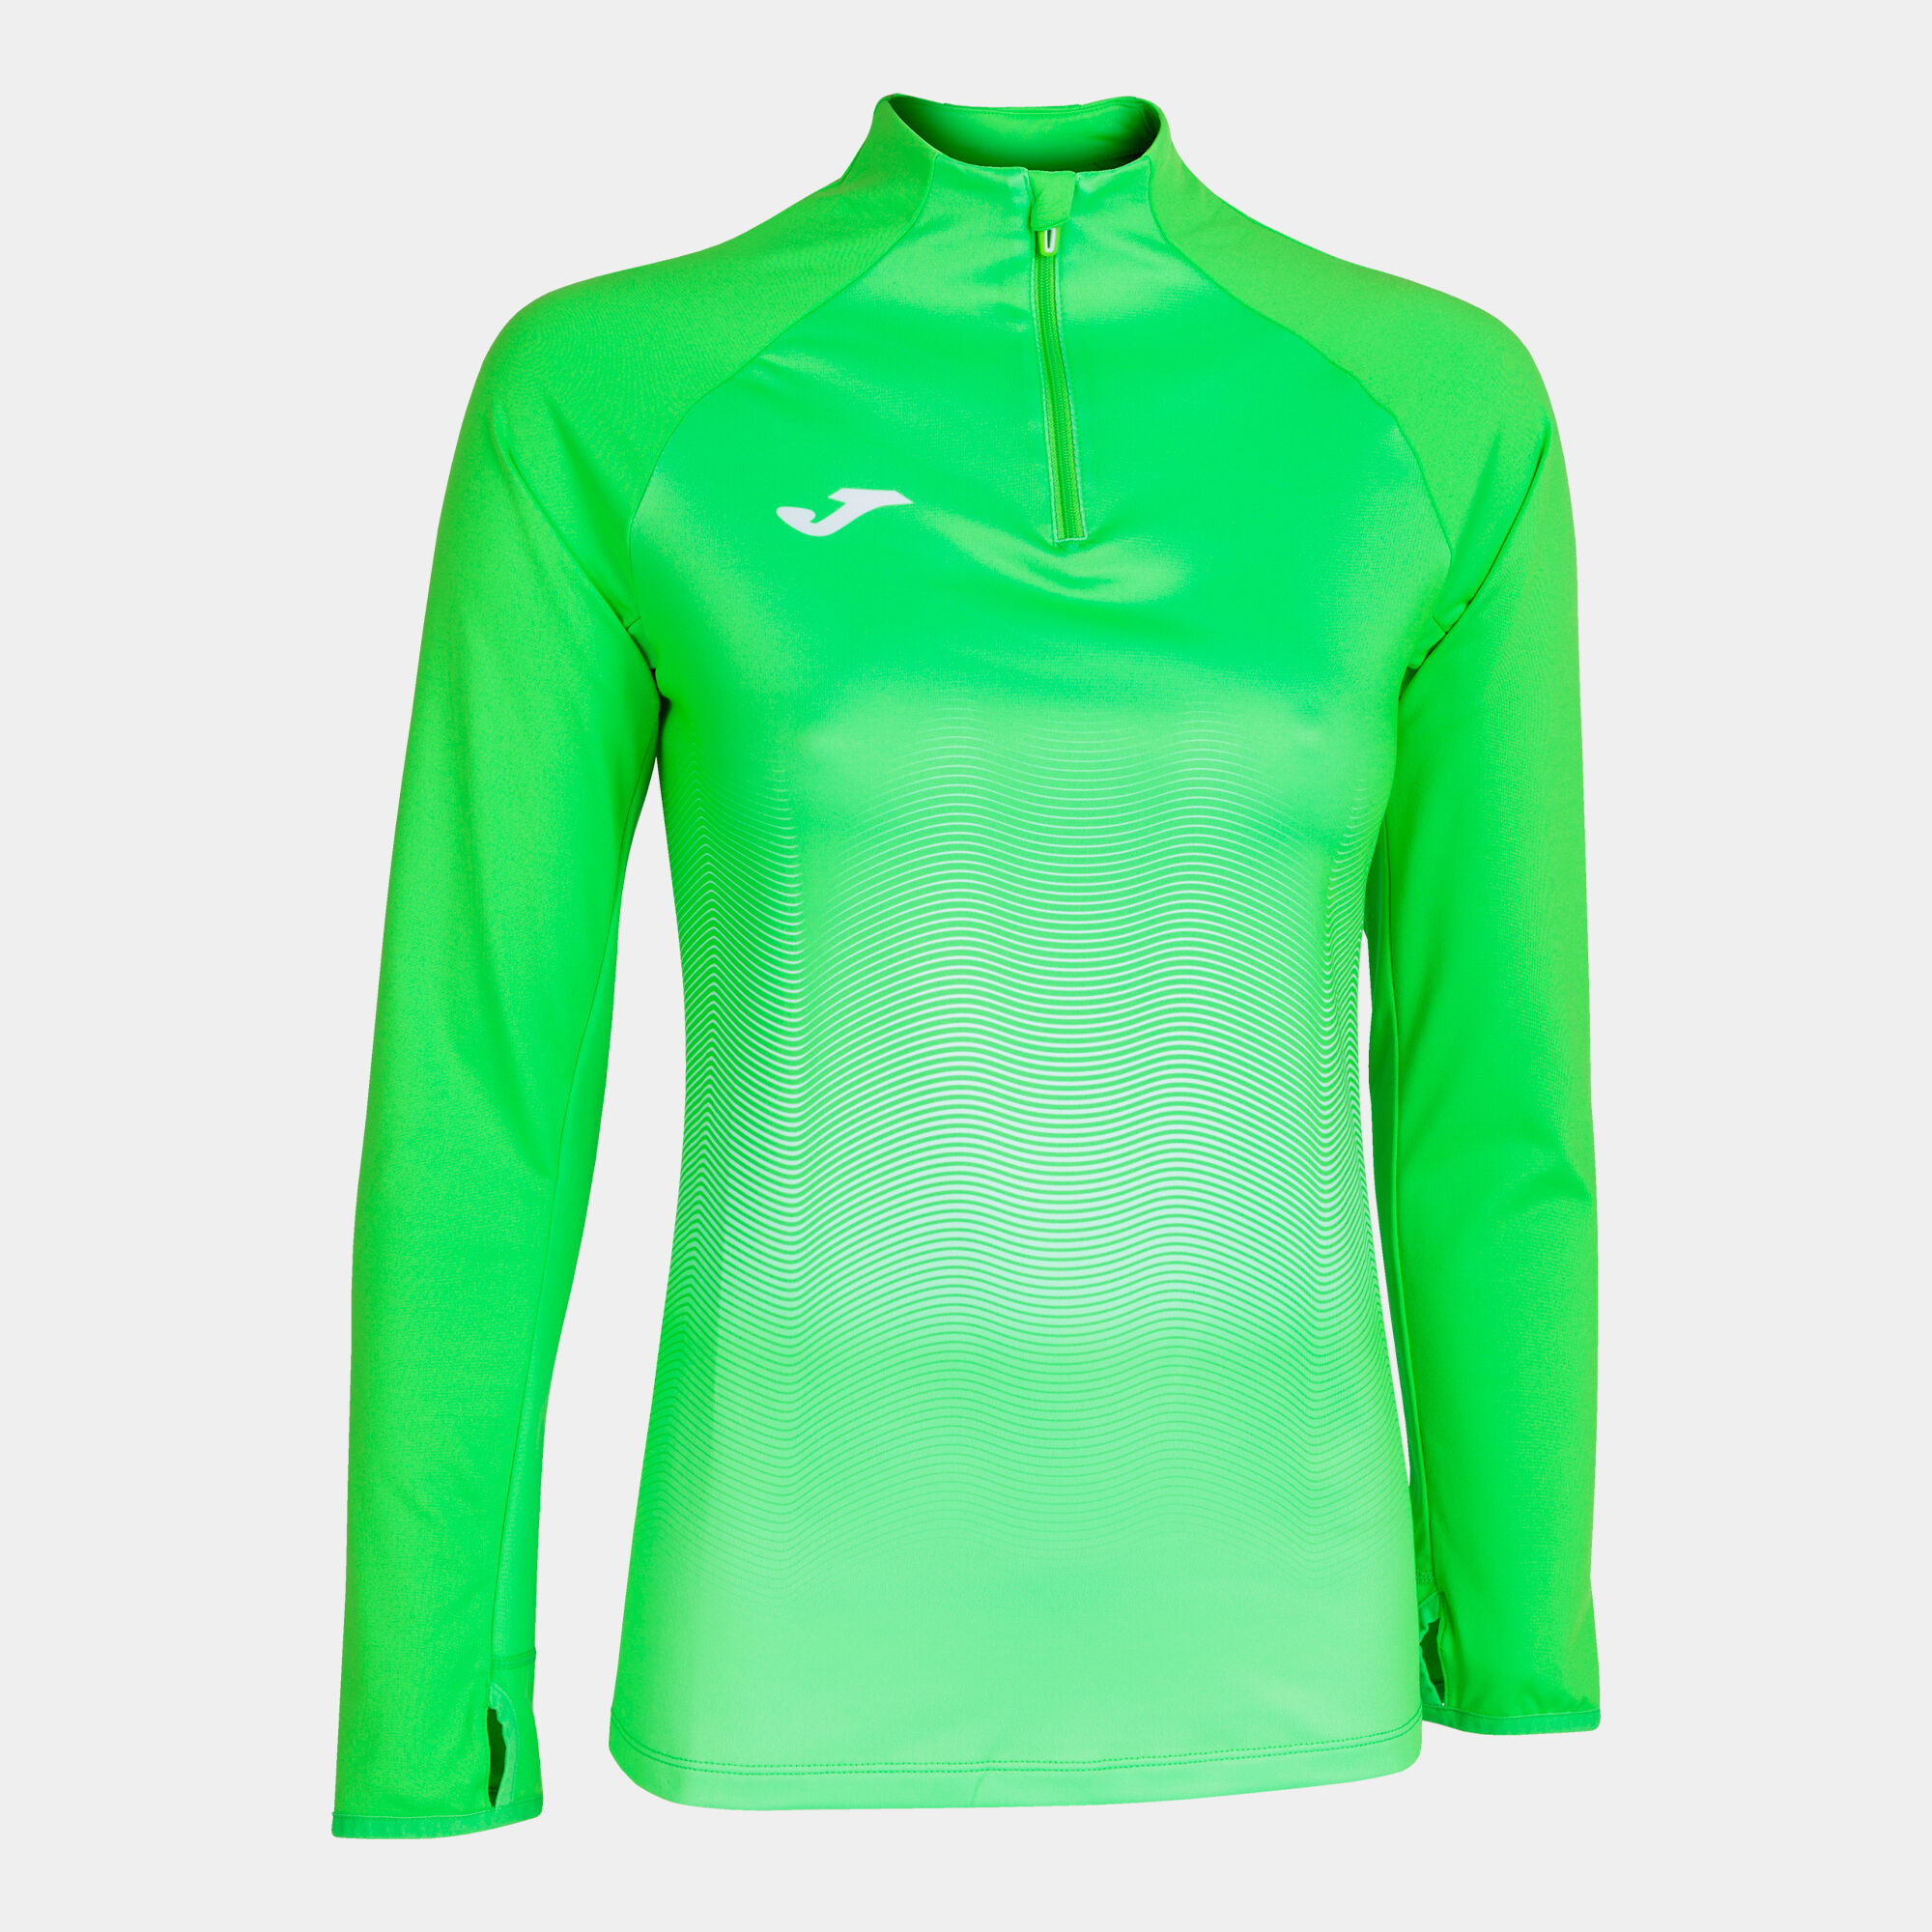 Bluza kobiety Elite VII fluorescencyjny zielony bialy